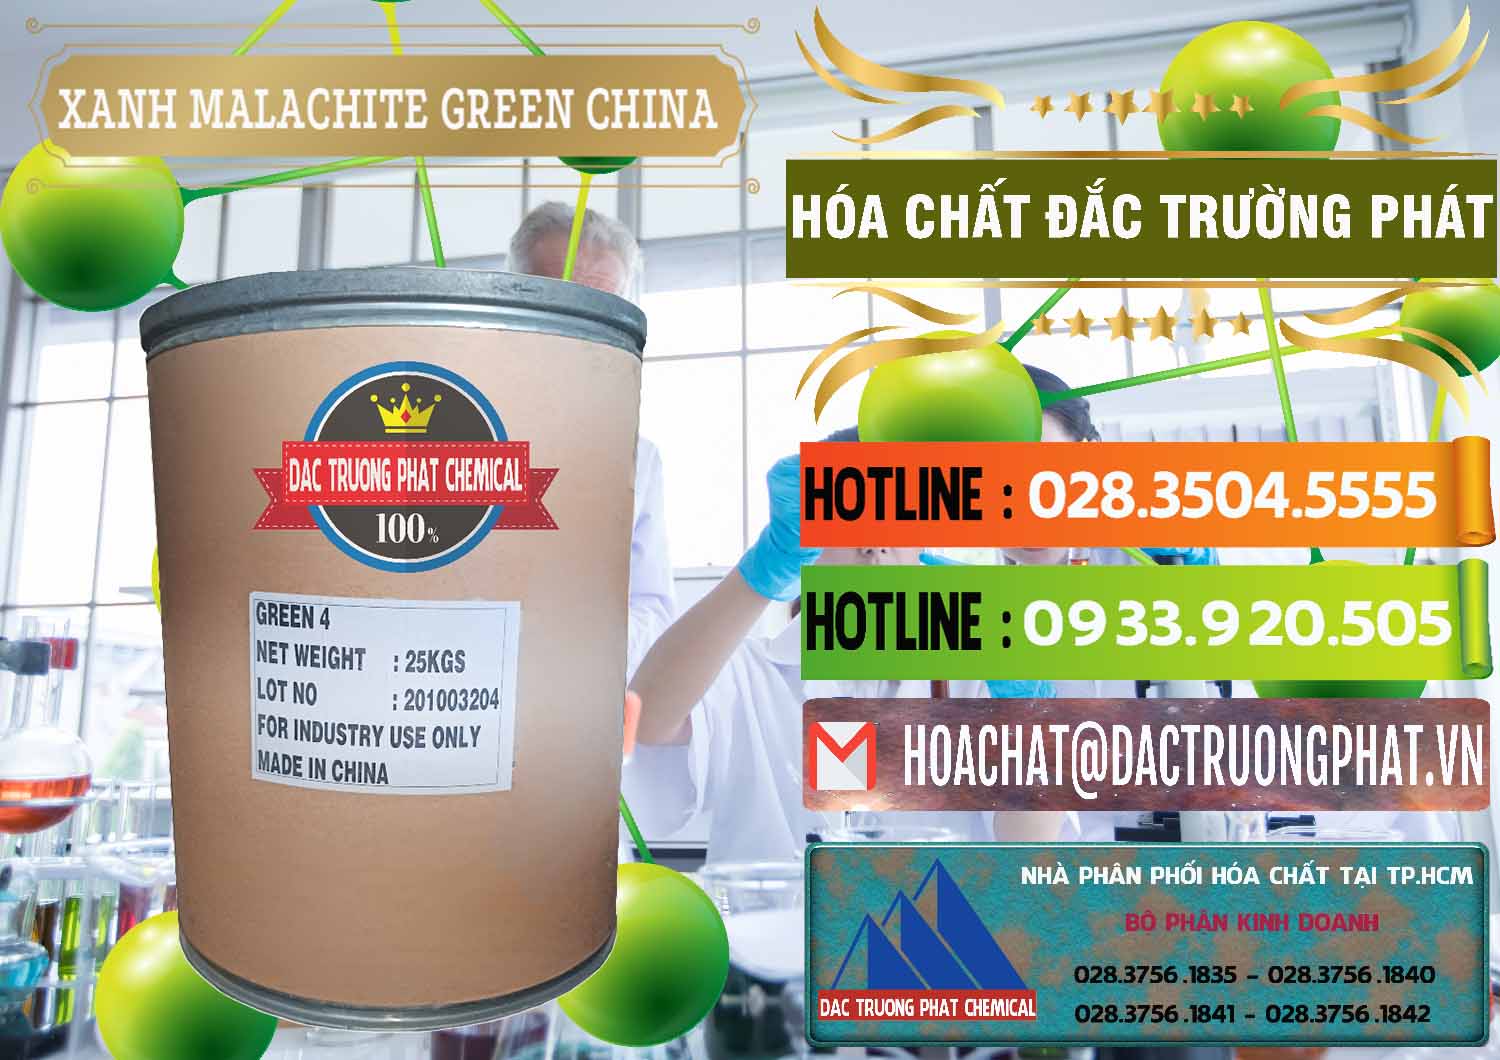 Phân phối & bán Xanh Malachite Green Trung Quốc China - 0325 - Công ty phân phối và cung ứng hóa chất tại TP.HCM - cungcaphoachat.com.vn